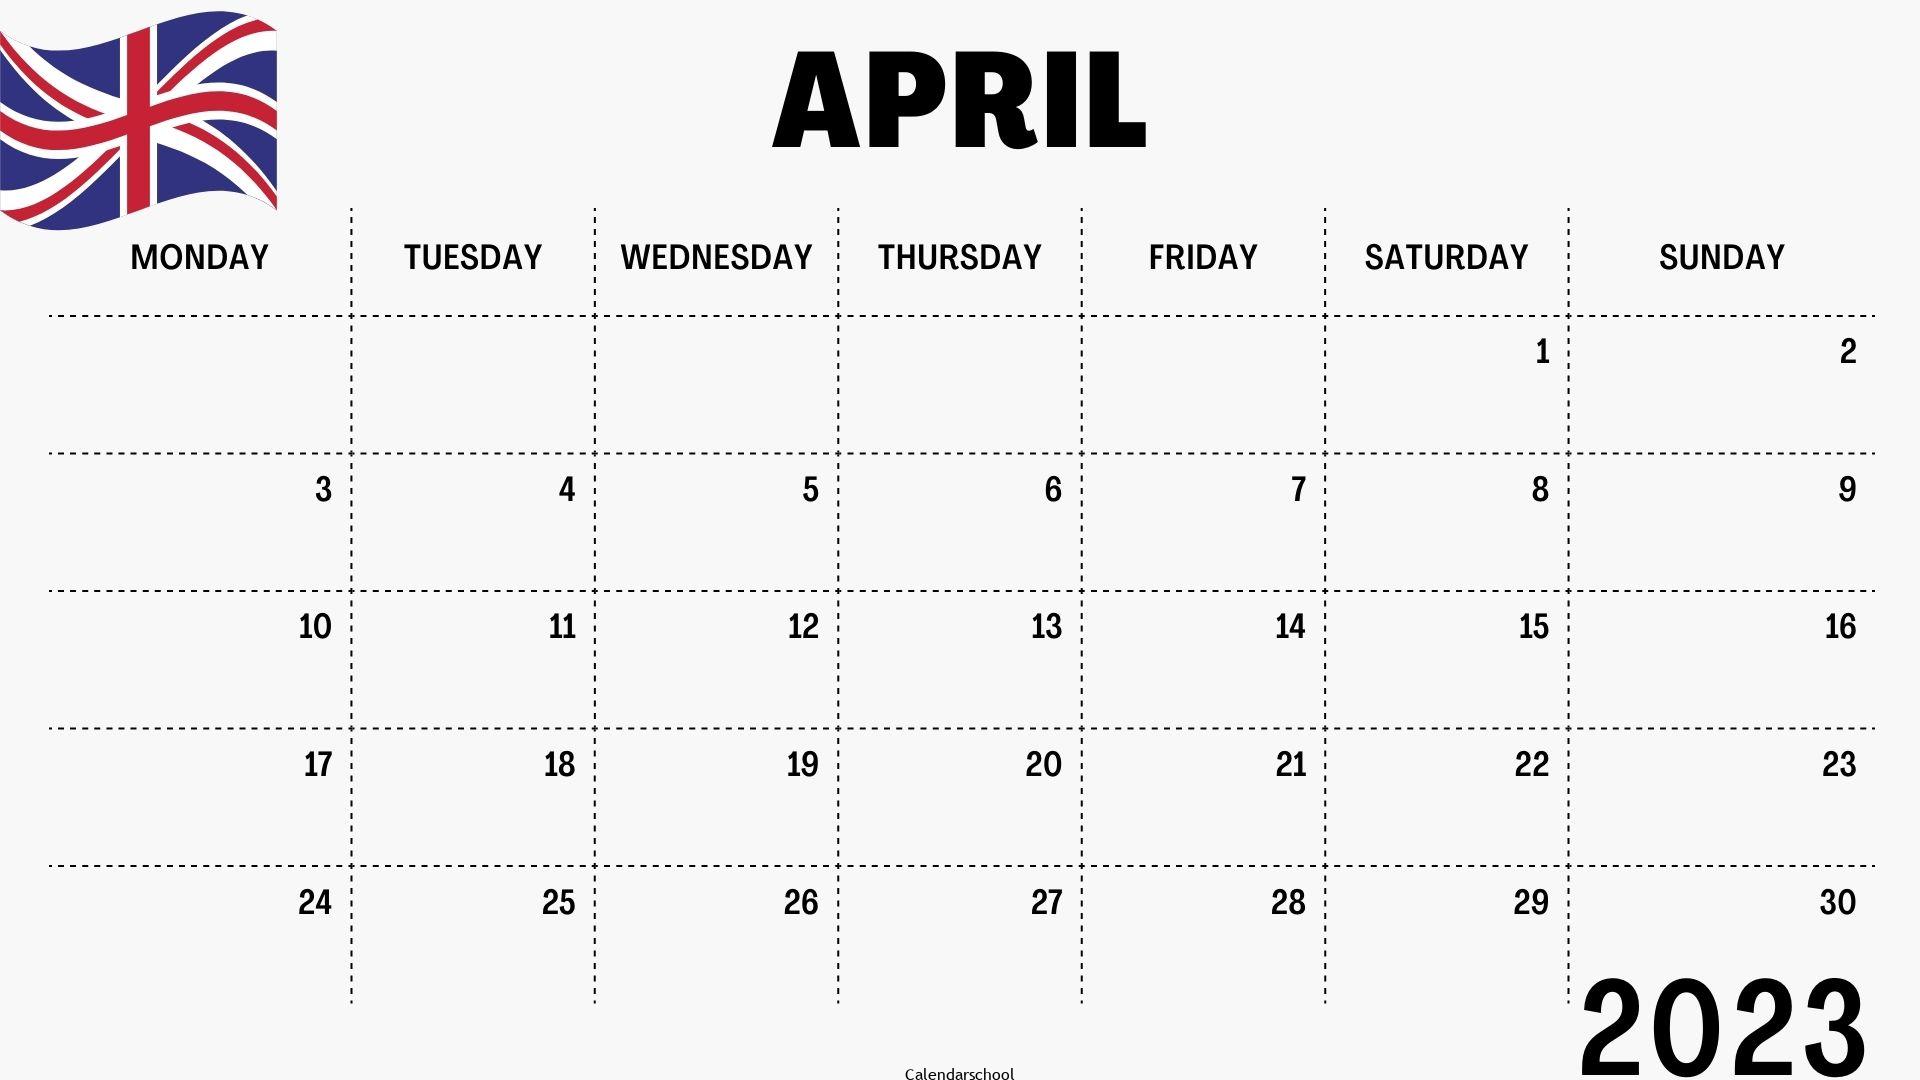 April 2023 Calendar with Holidays UK